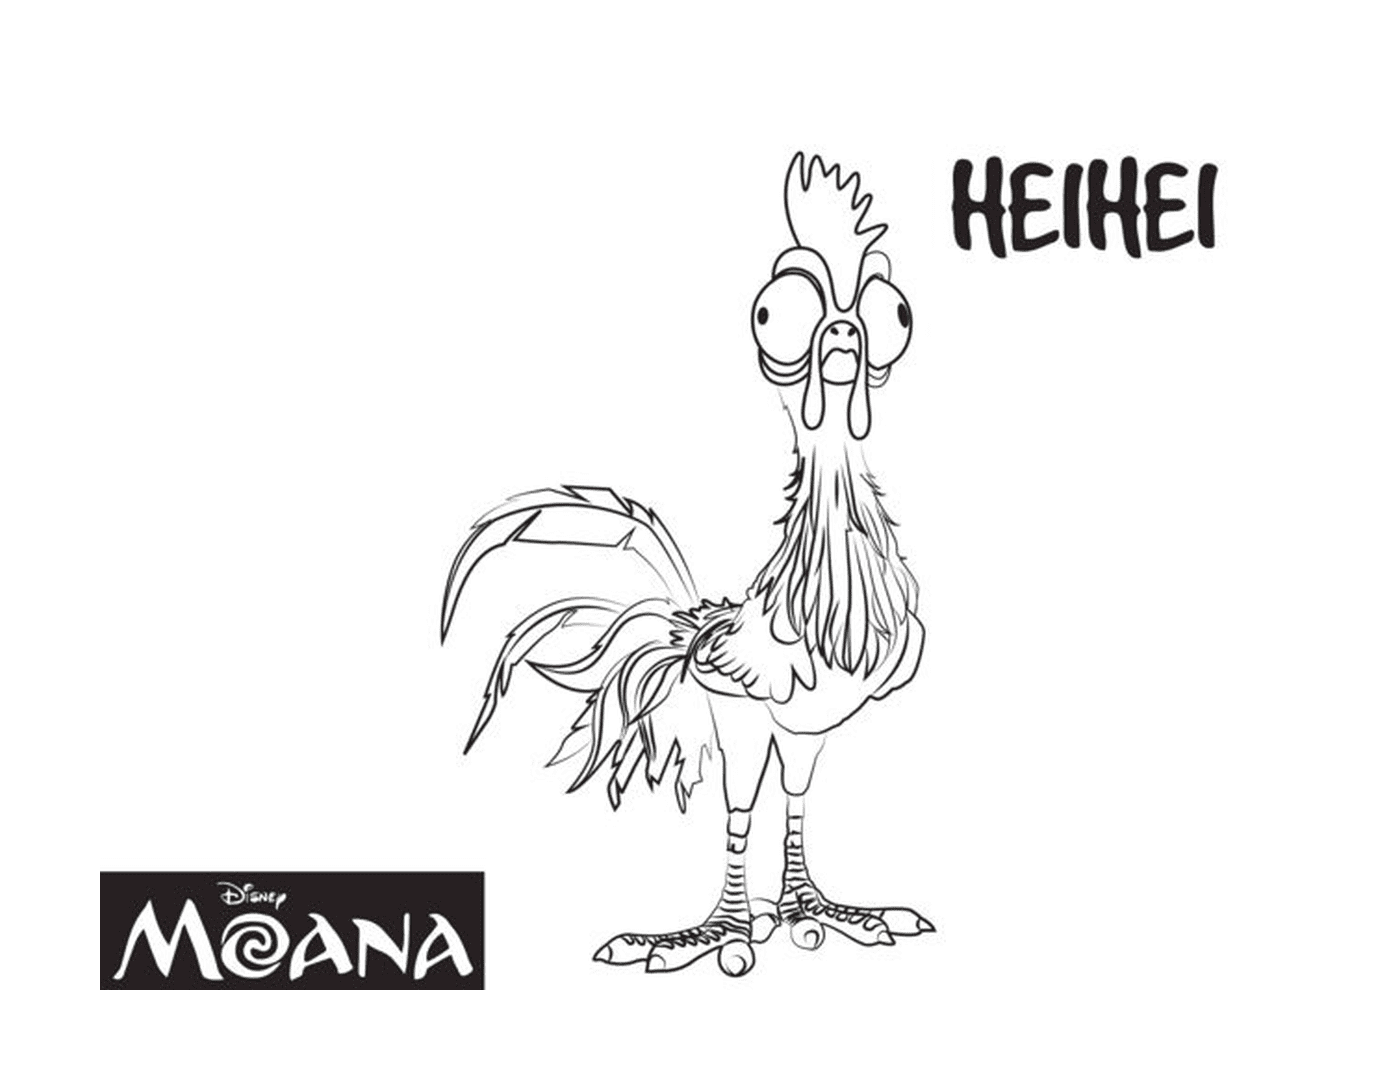  Heihei, the hilarious cock 